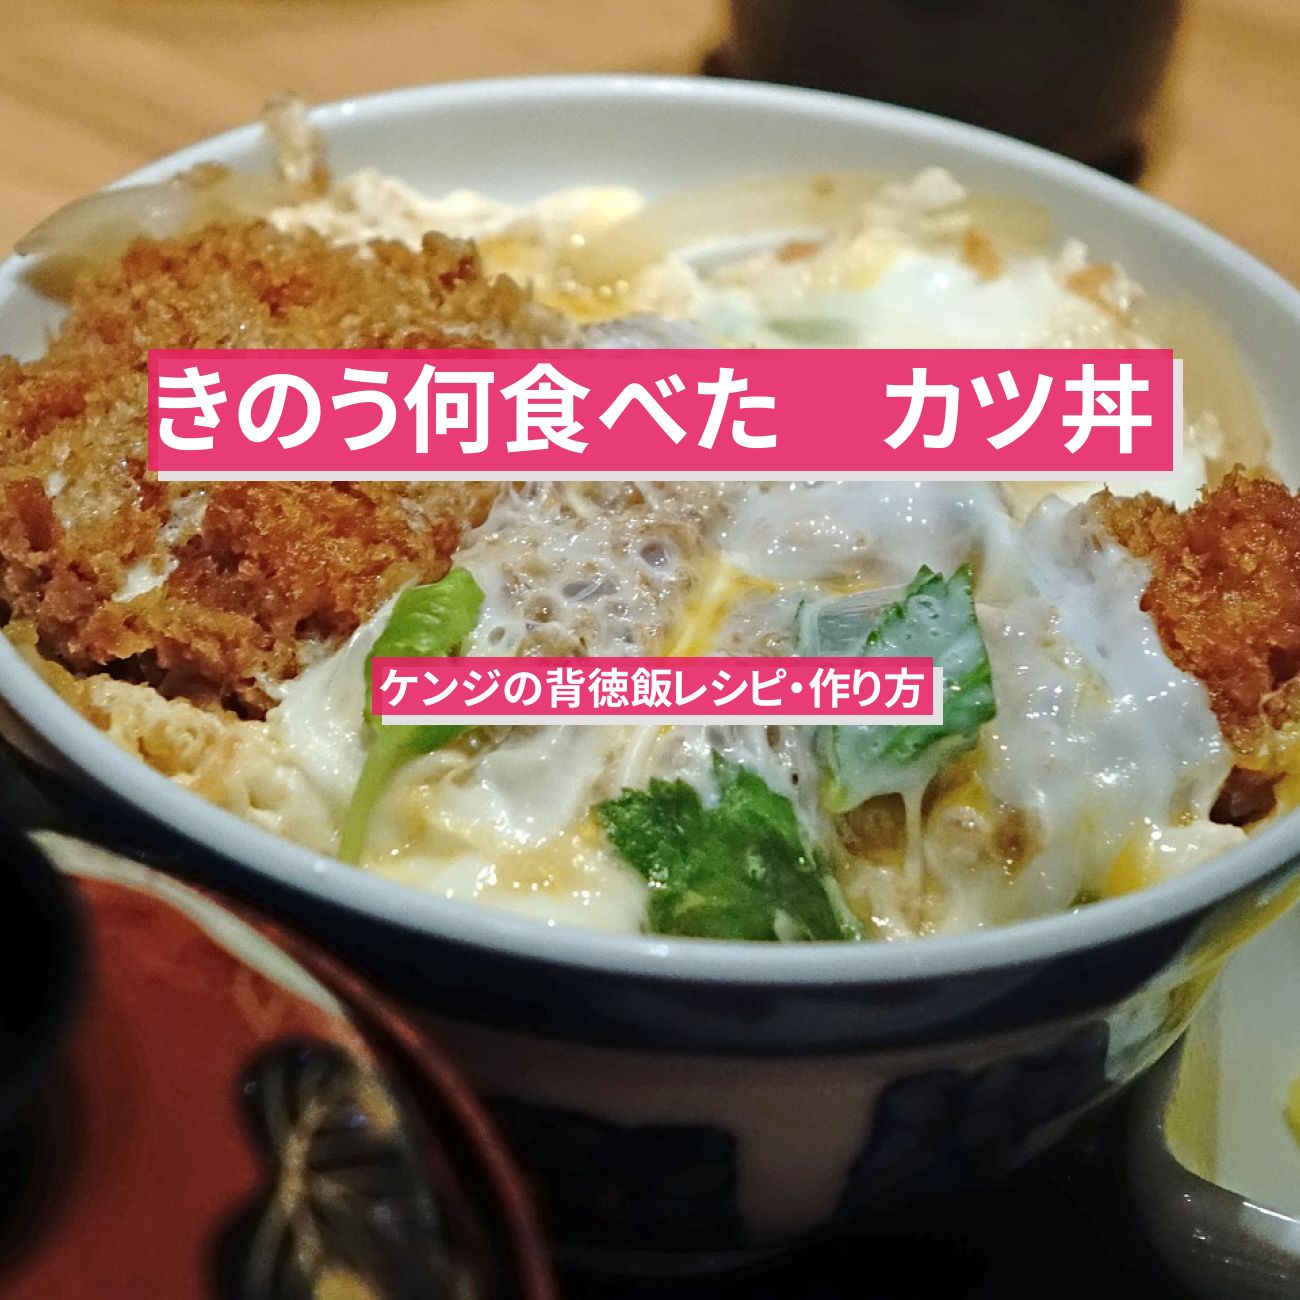 【きのう何食べた】『カツ丼』ケンジの背徳飯レシピ・作り方〔西島秀俊〕